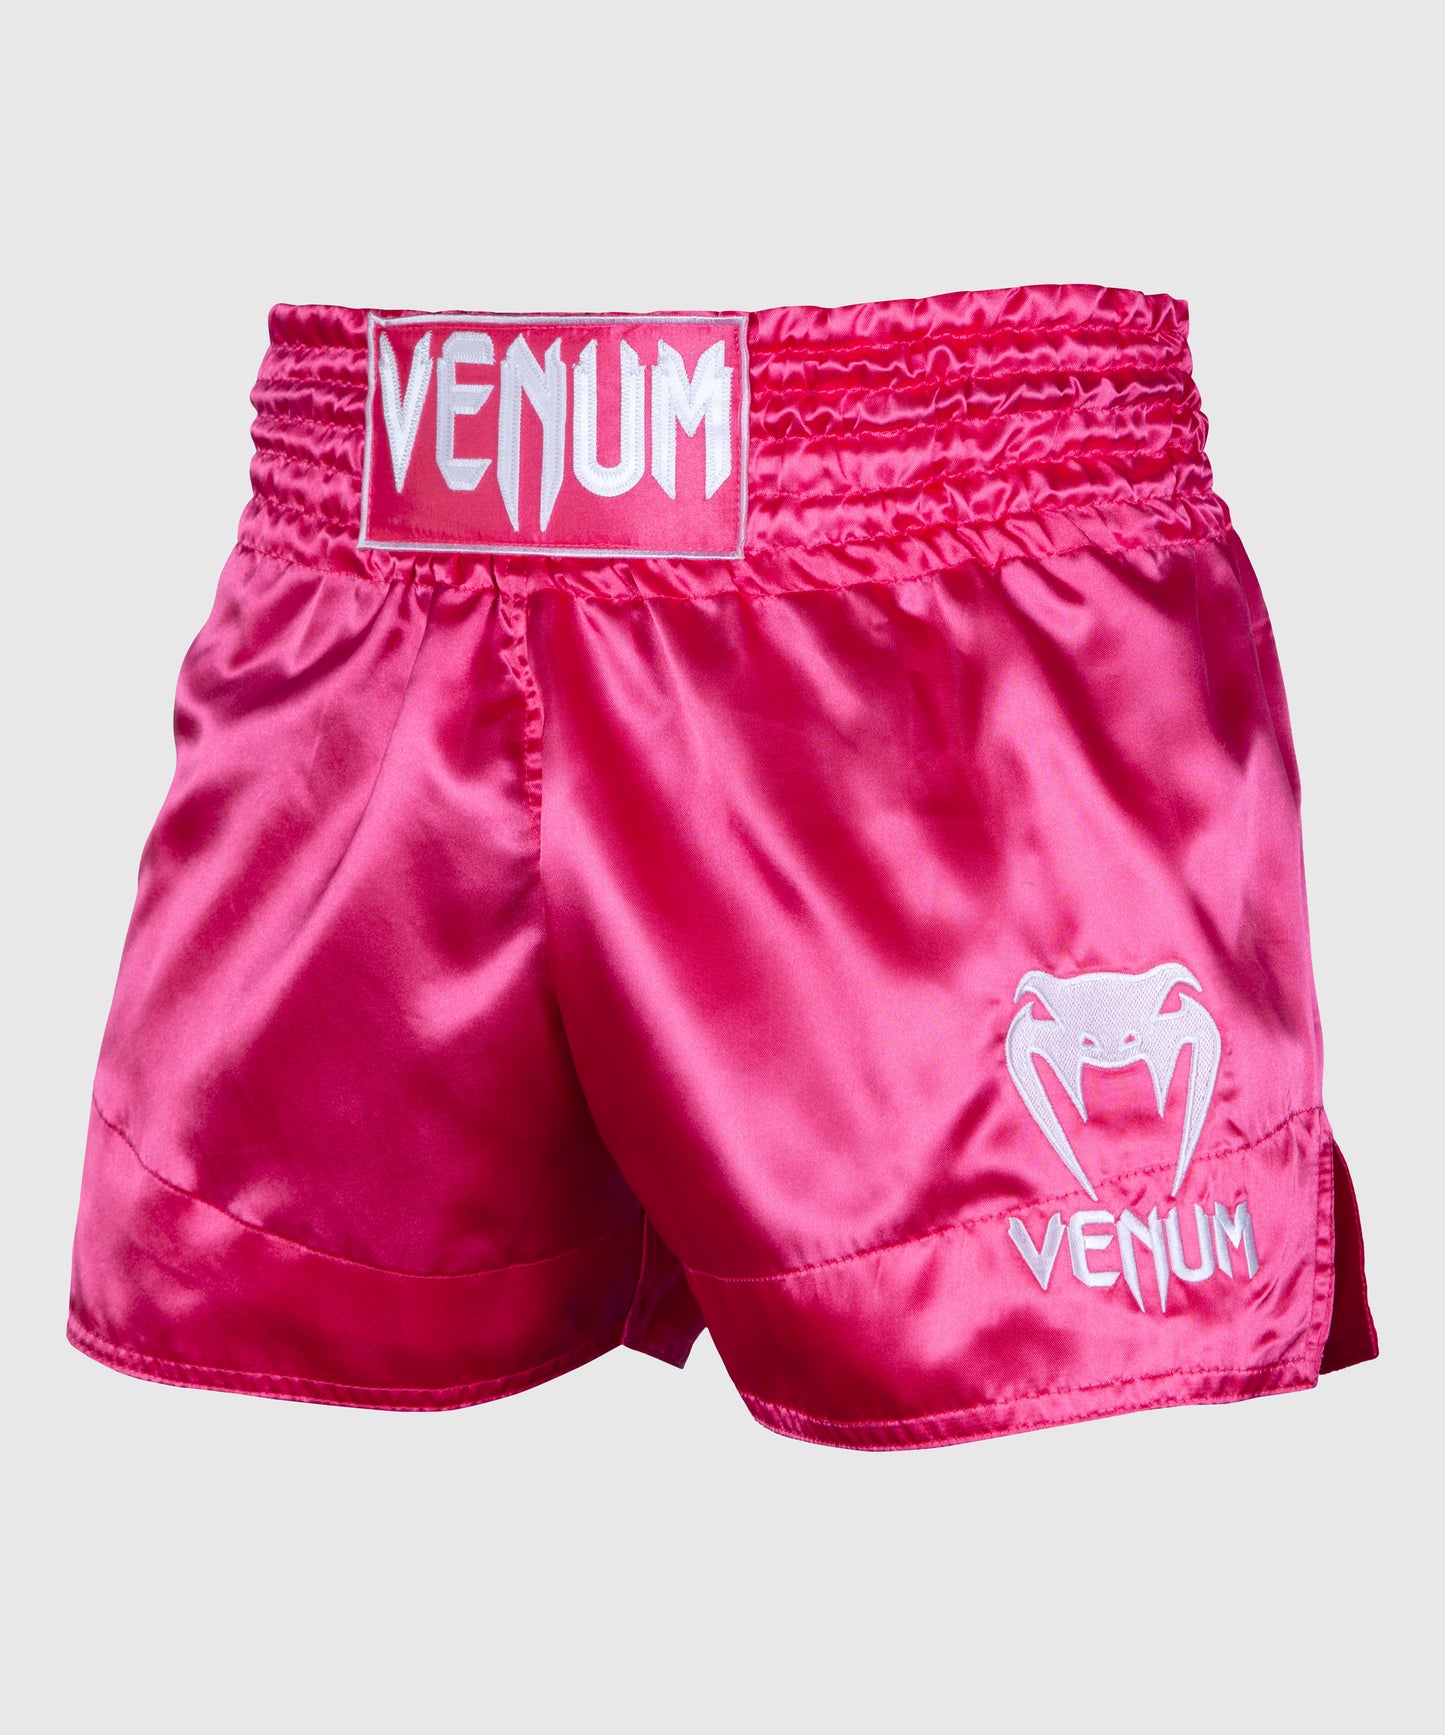 Venum Classic Muay Thai Short - Rose/Blanc